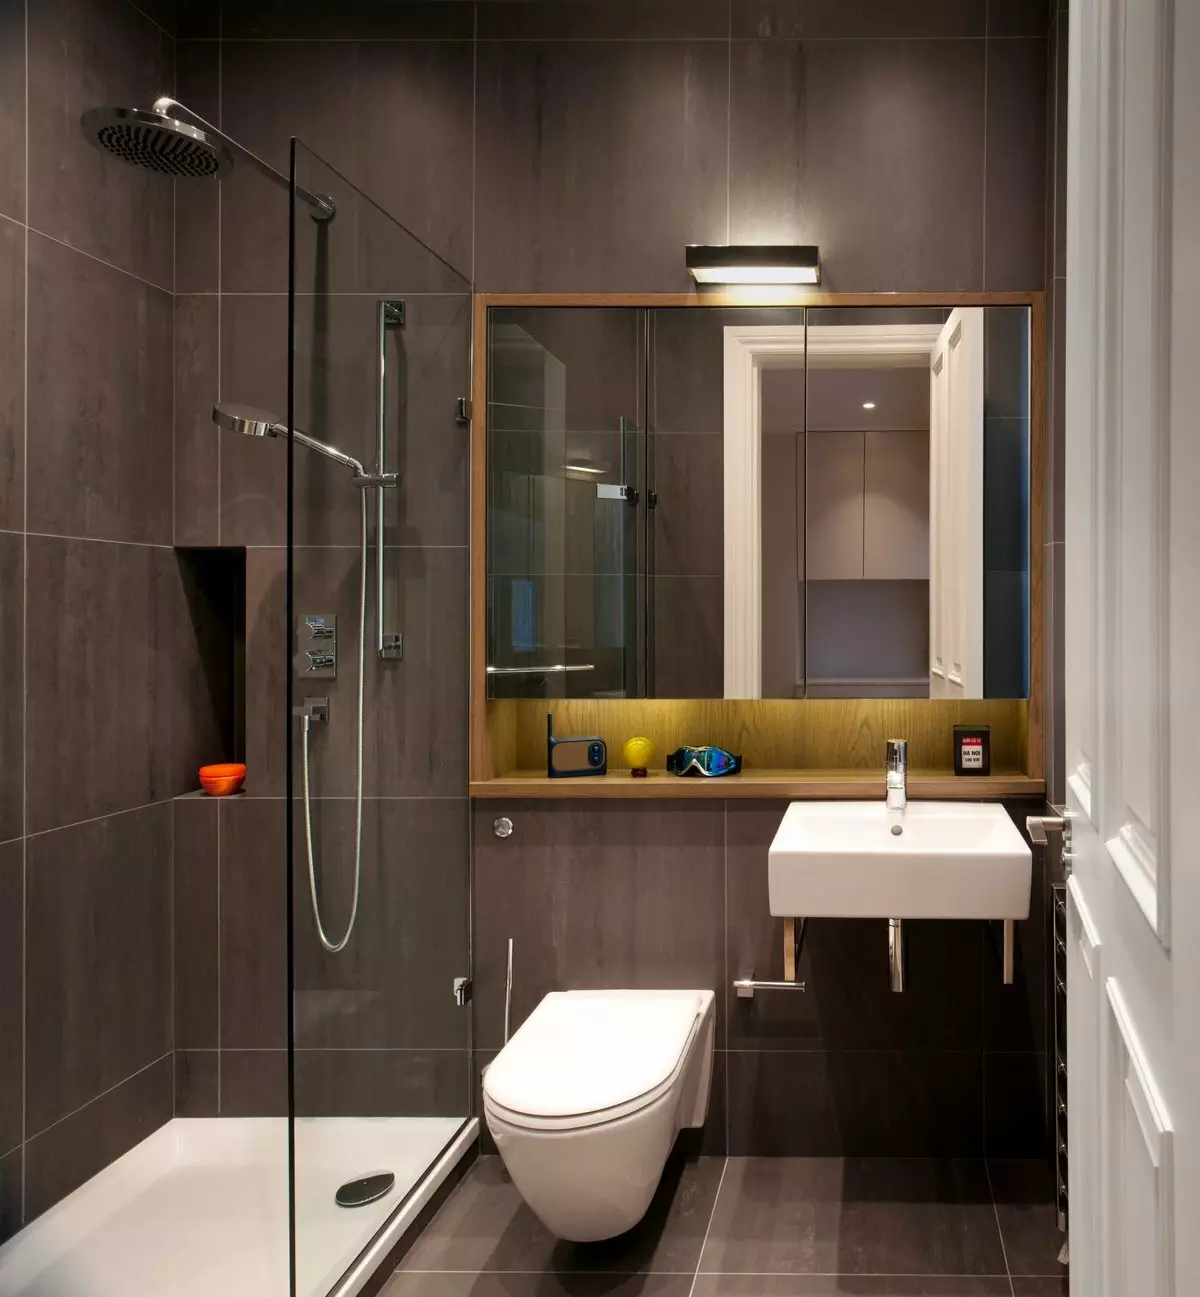 결합 된 욕실 6 평방 미터의 디자인. M (77 사진) : 화장실, 목욕 레이아웃 2 x 3 미터의 인테리어 디자인 10454_14